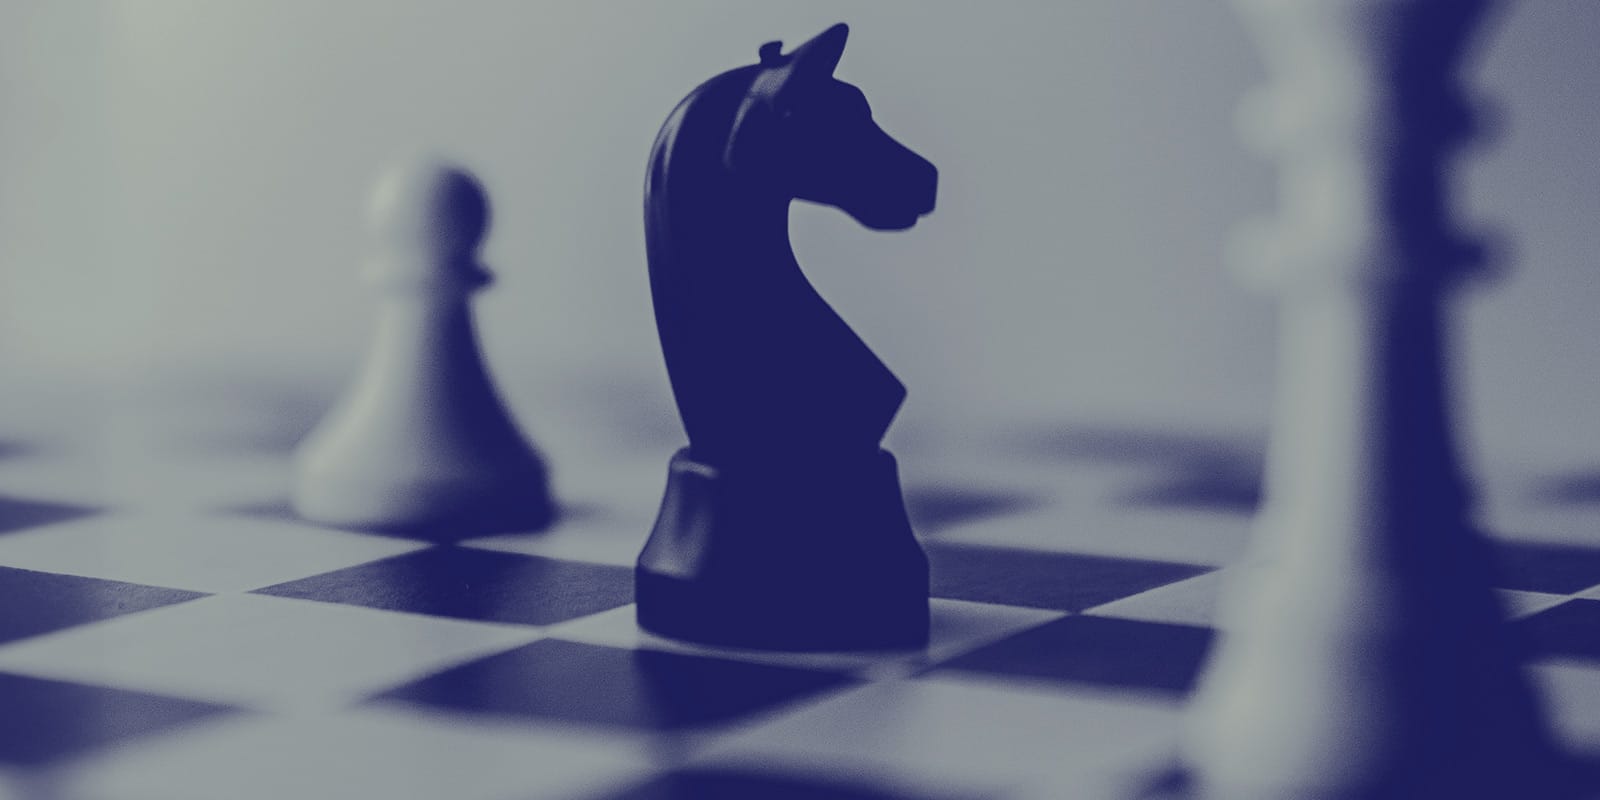 πιόνι σκάκι για σύνδεση με brand στρατηγική